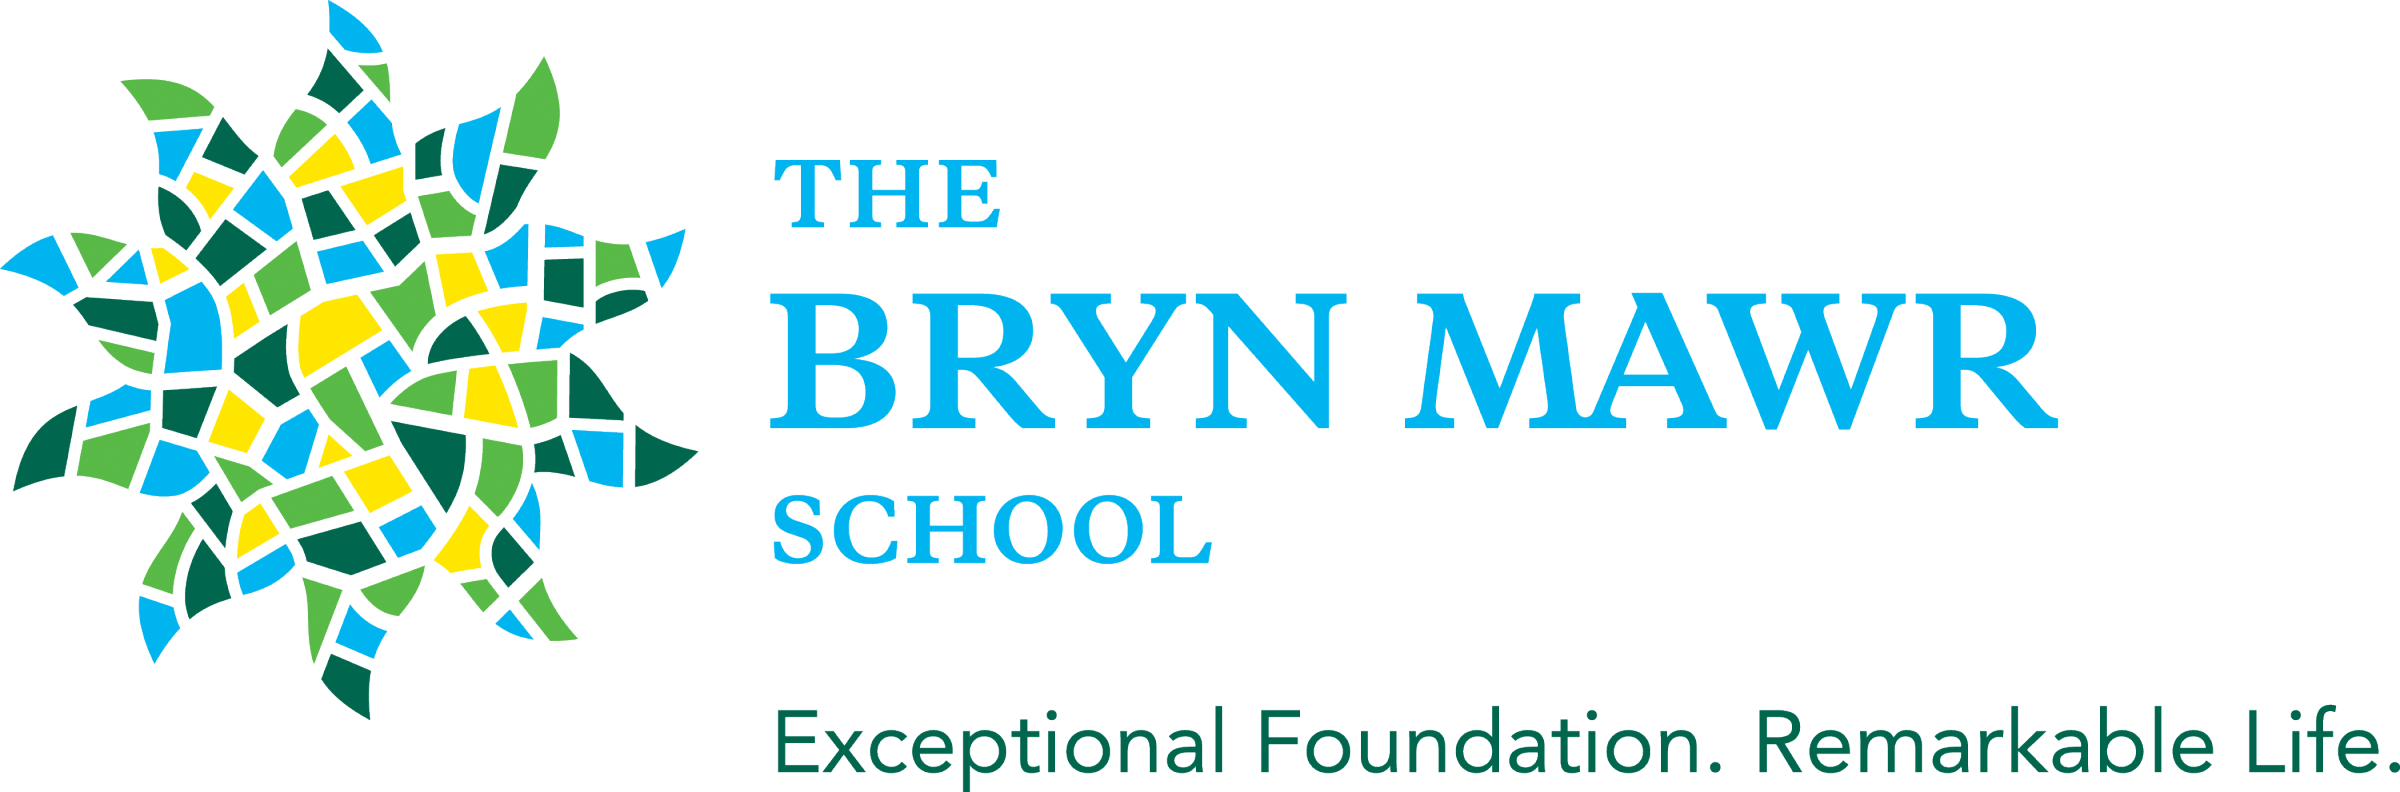 The Bryn Mawr School校徽